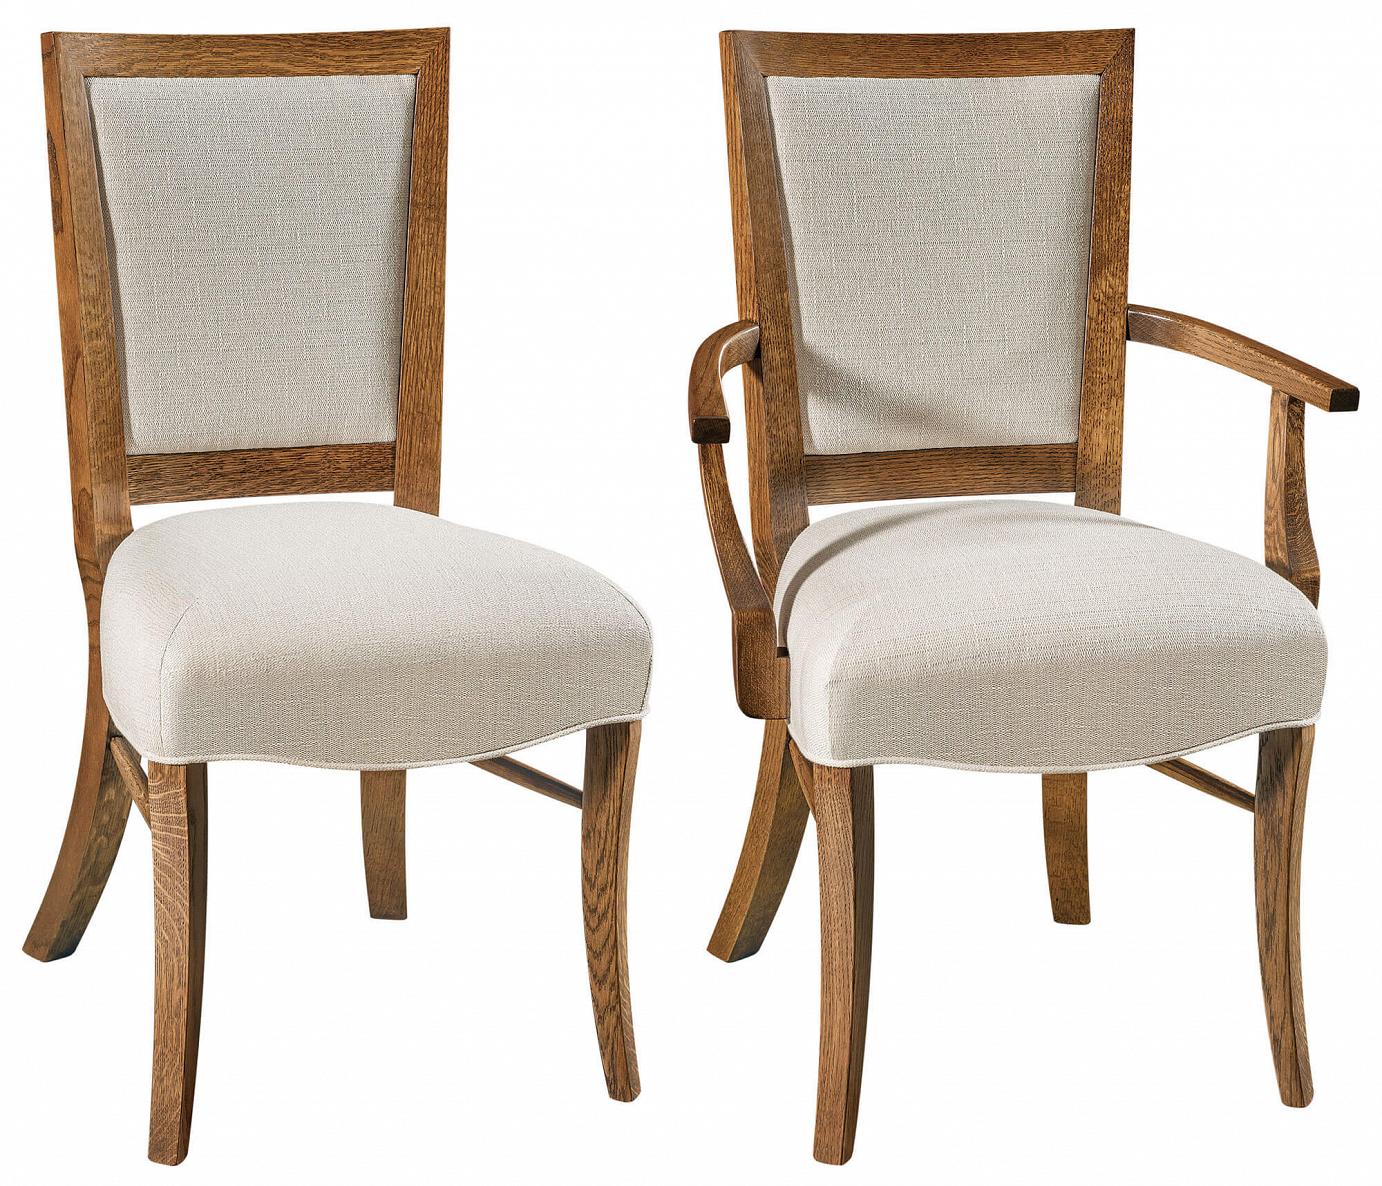 RH Yoder Kaydin Chairs